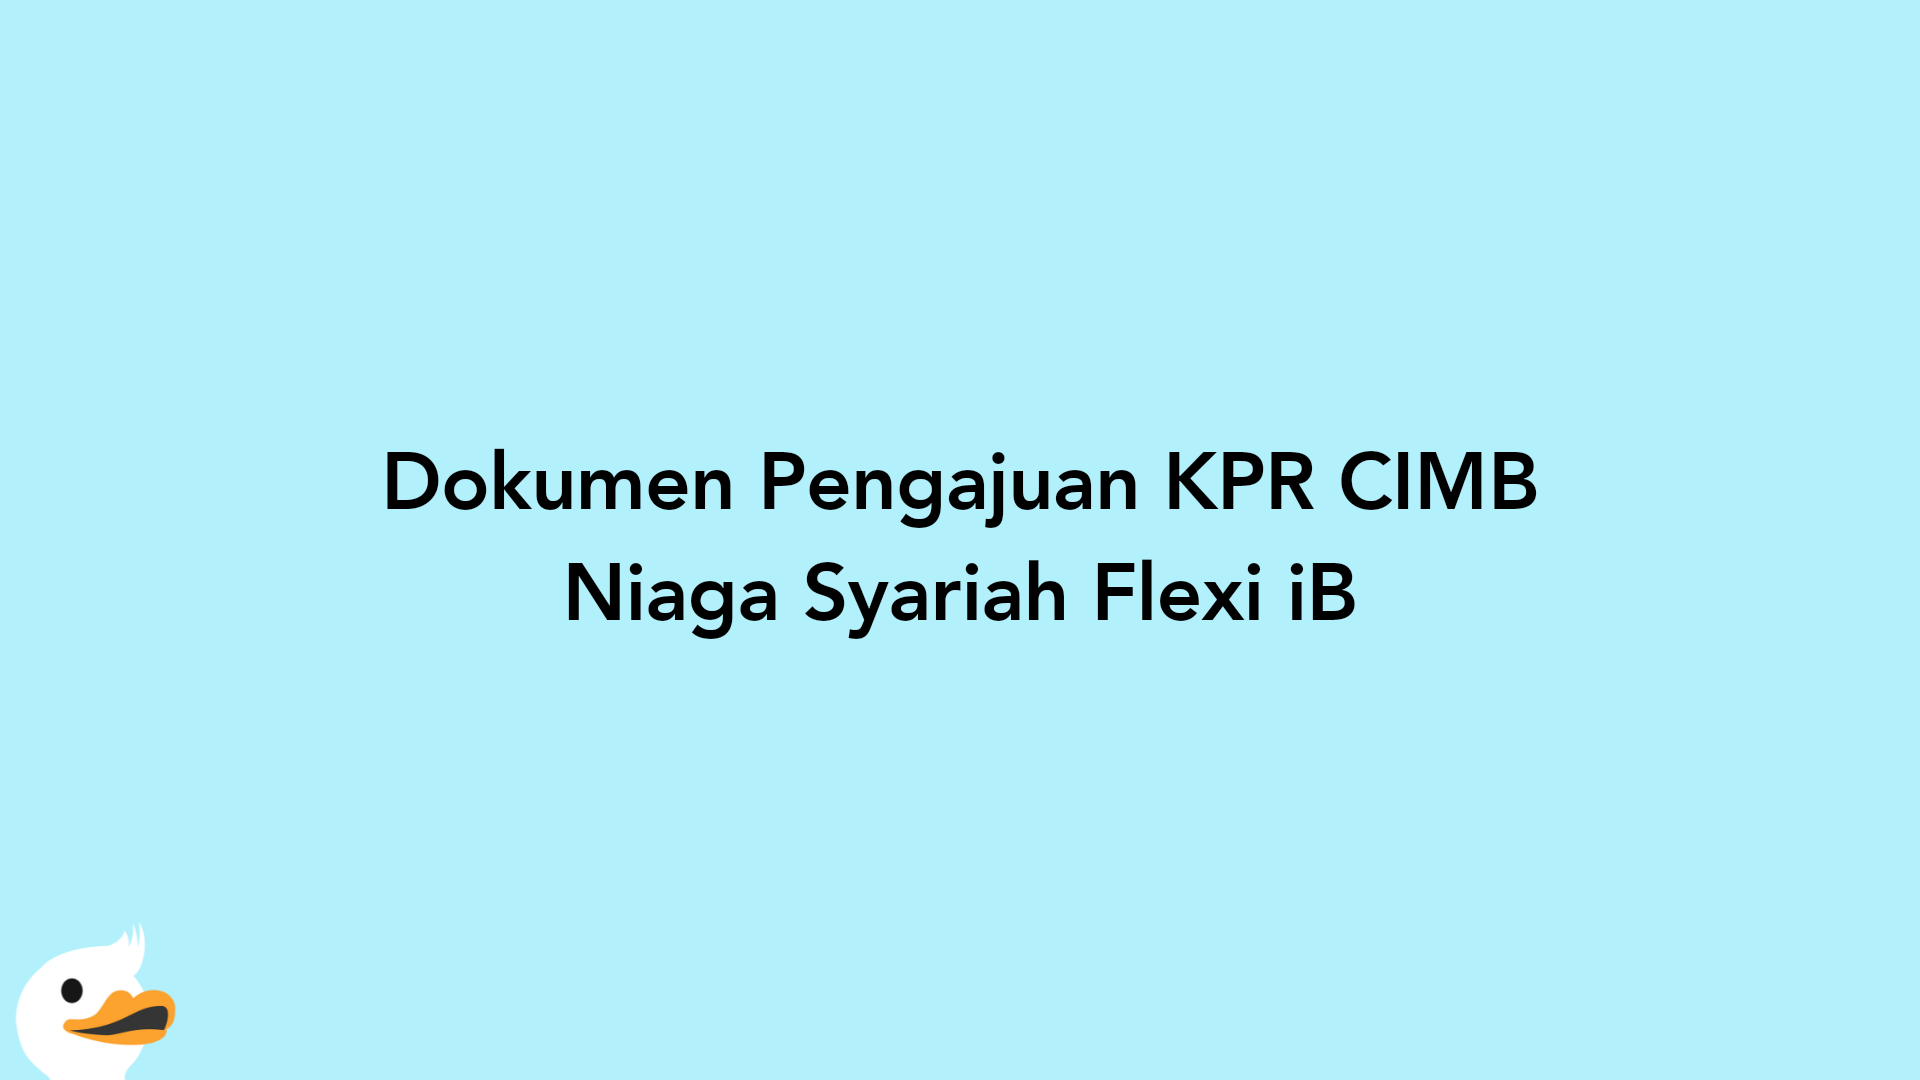 Dokumen Pengajuan KPR CIMB Niaga Syariah Flexi iB